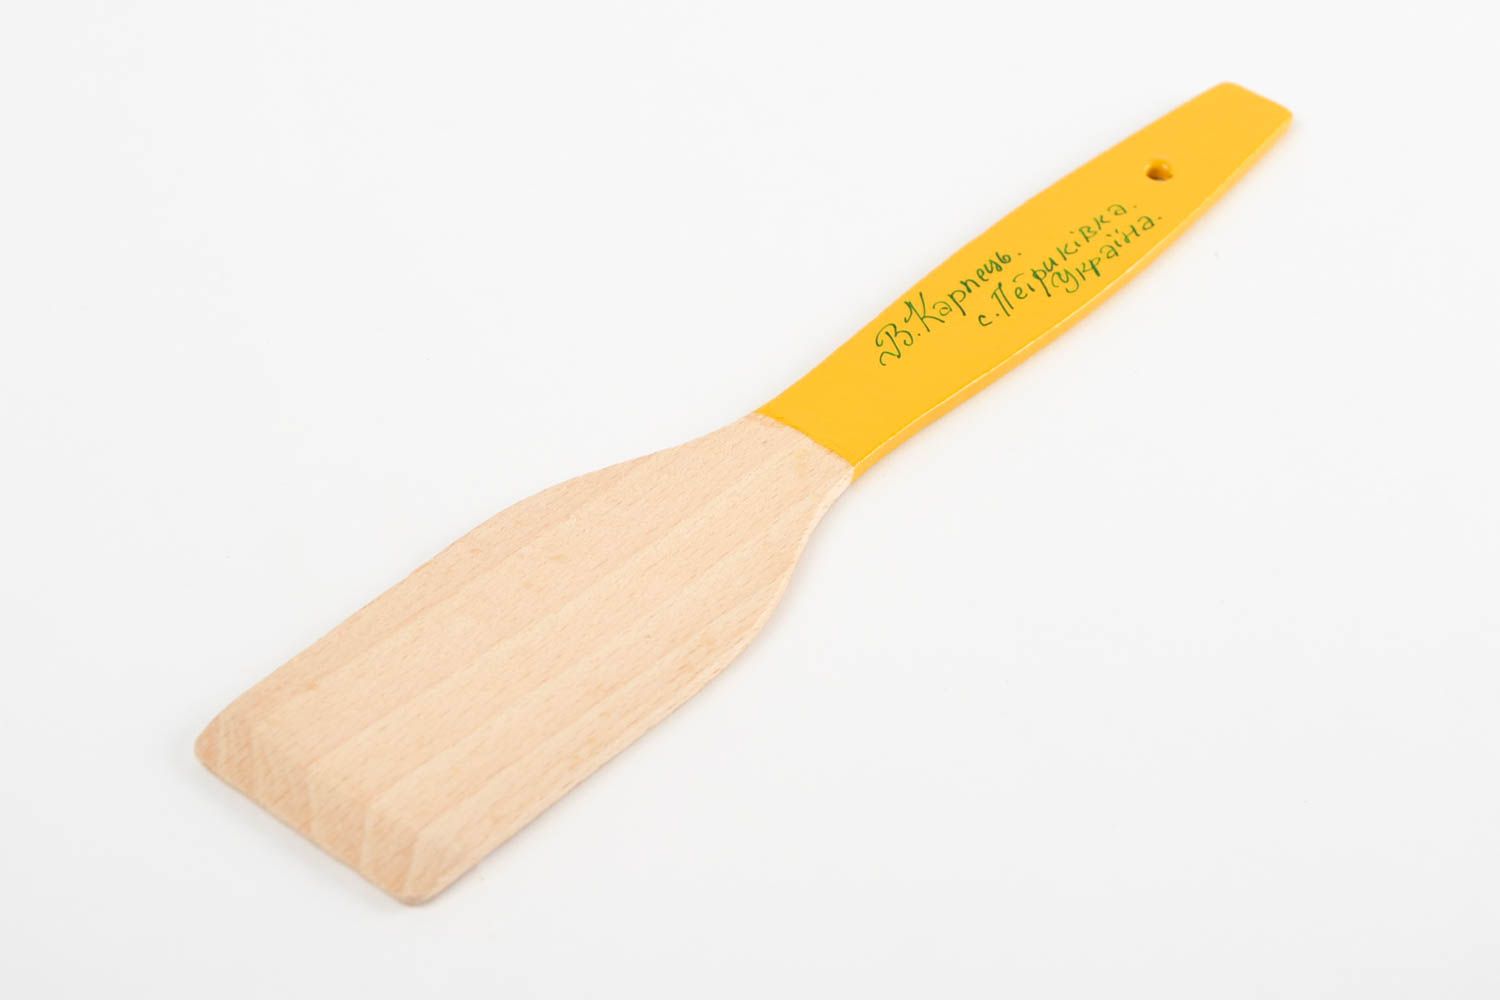 Handmade beautiful spatula stylish wooden utensil painted kitchen accessory photo 5